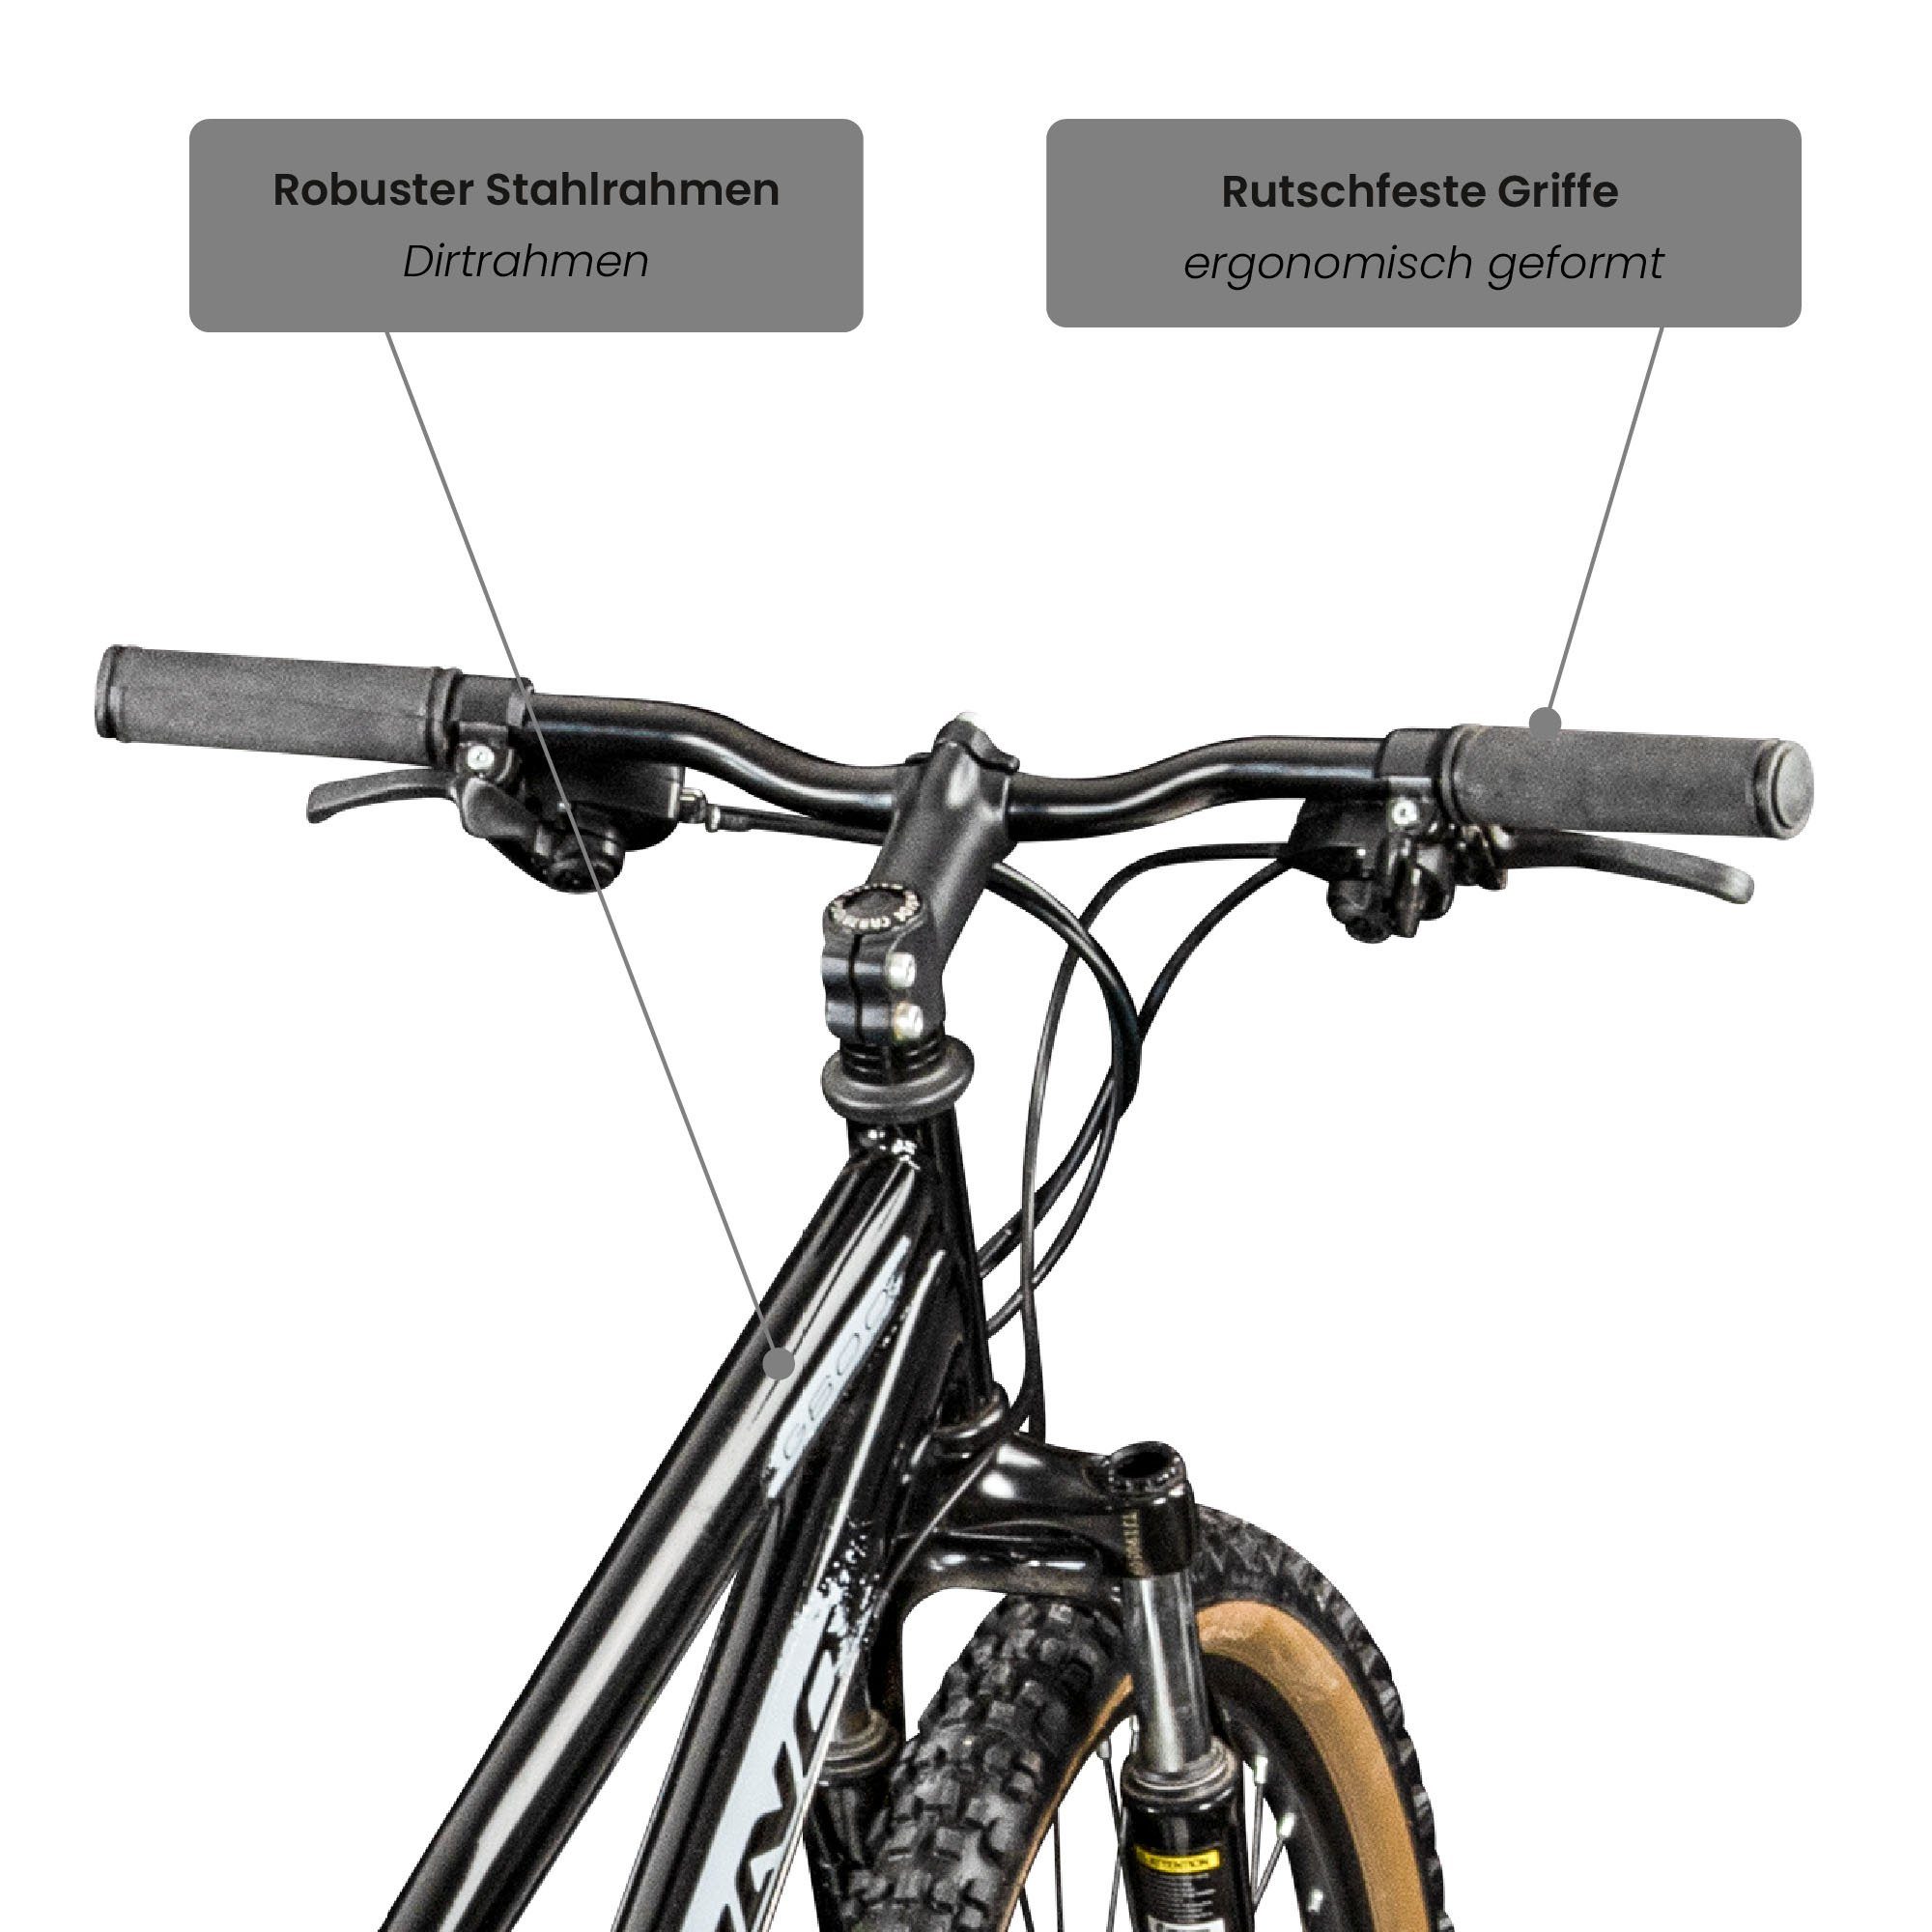 Galano Mountainbike G600, 18 Gang, Jugendliche Erwachsene Fahrrad - cm Kettenschaltung, schwarz/silbergrau 26 für Dirtbike und 165 Zoll 145